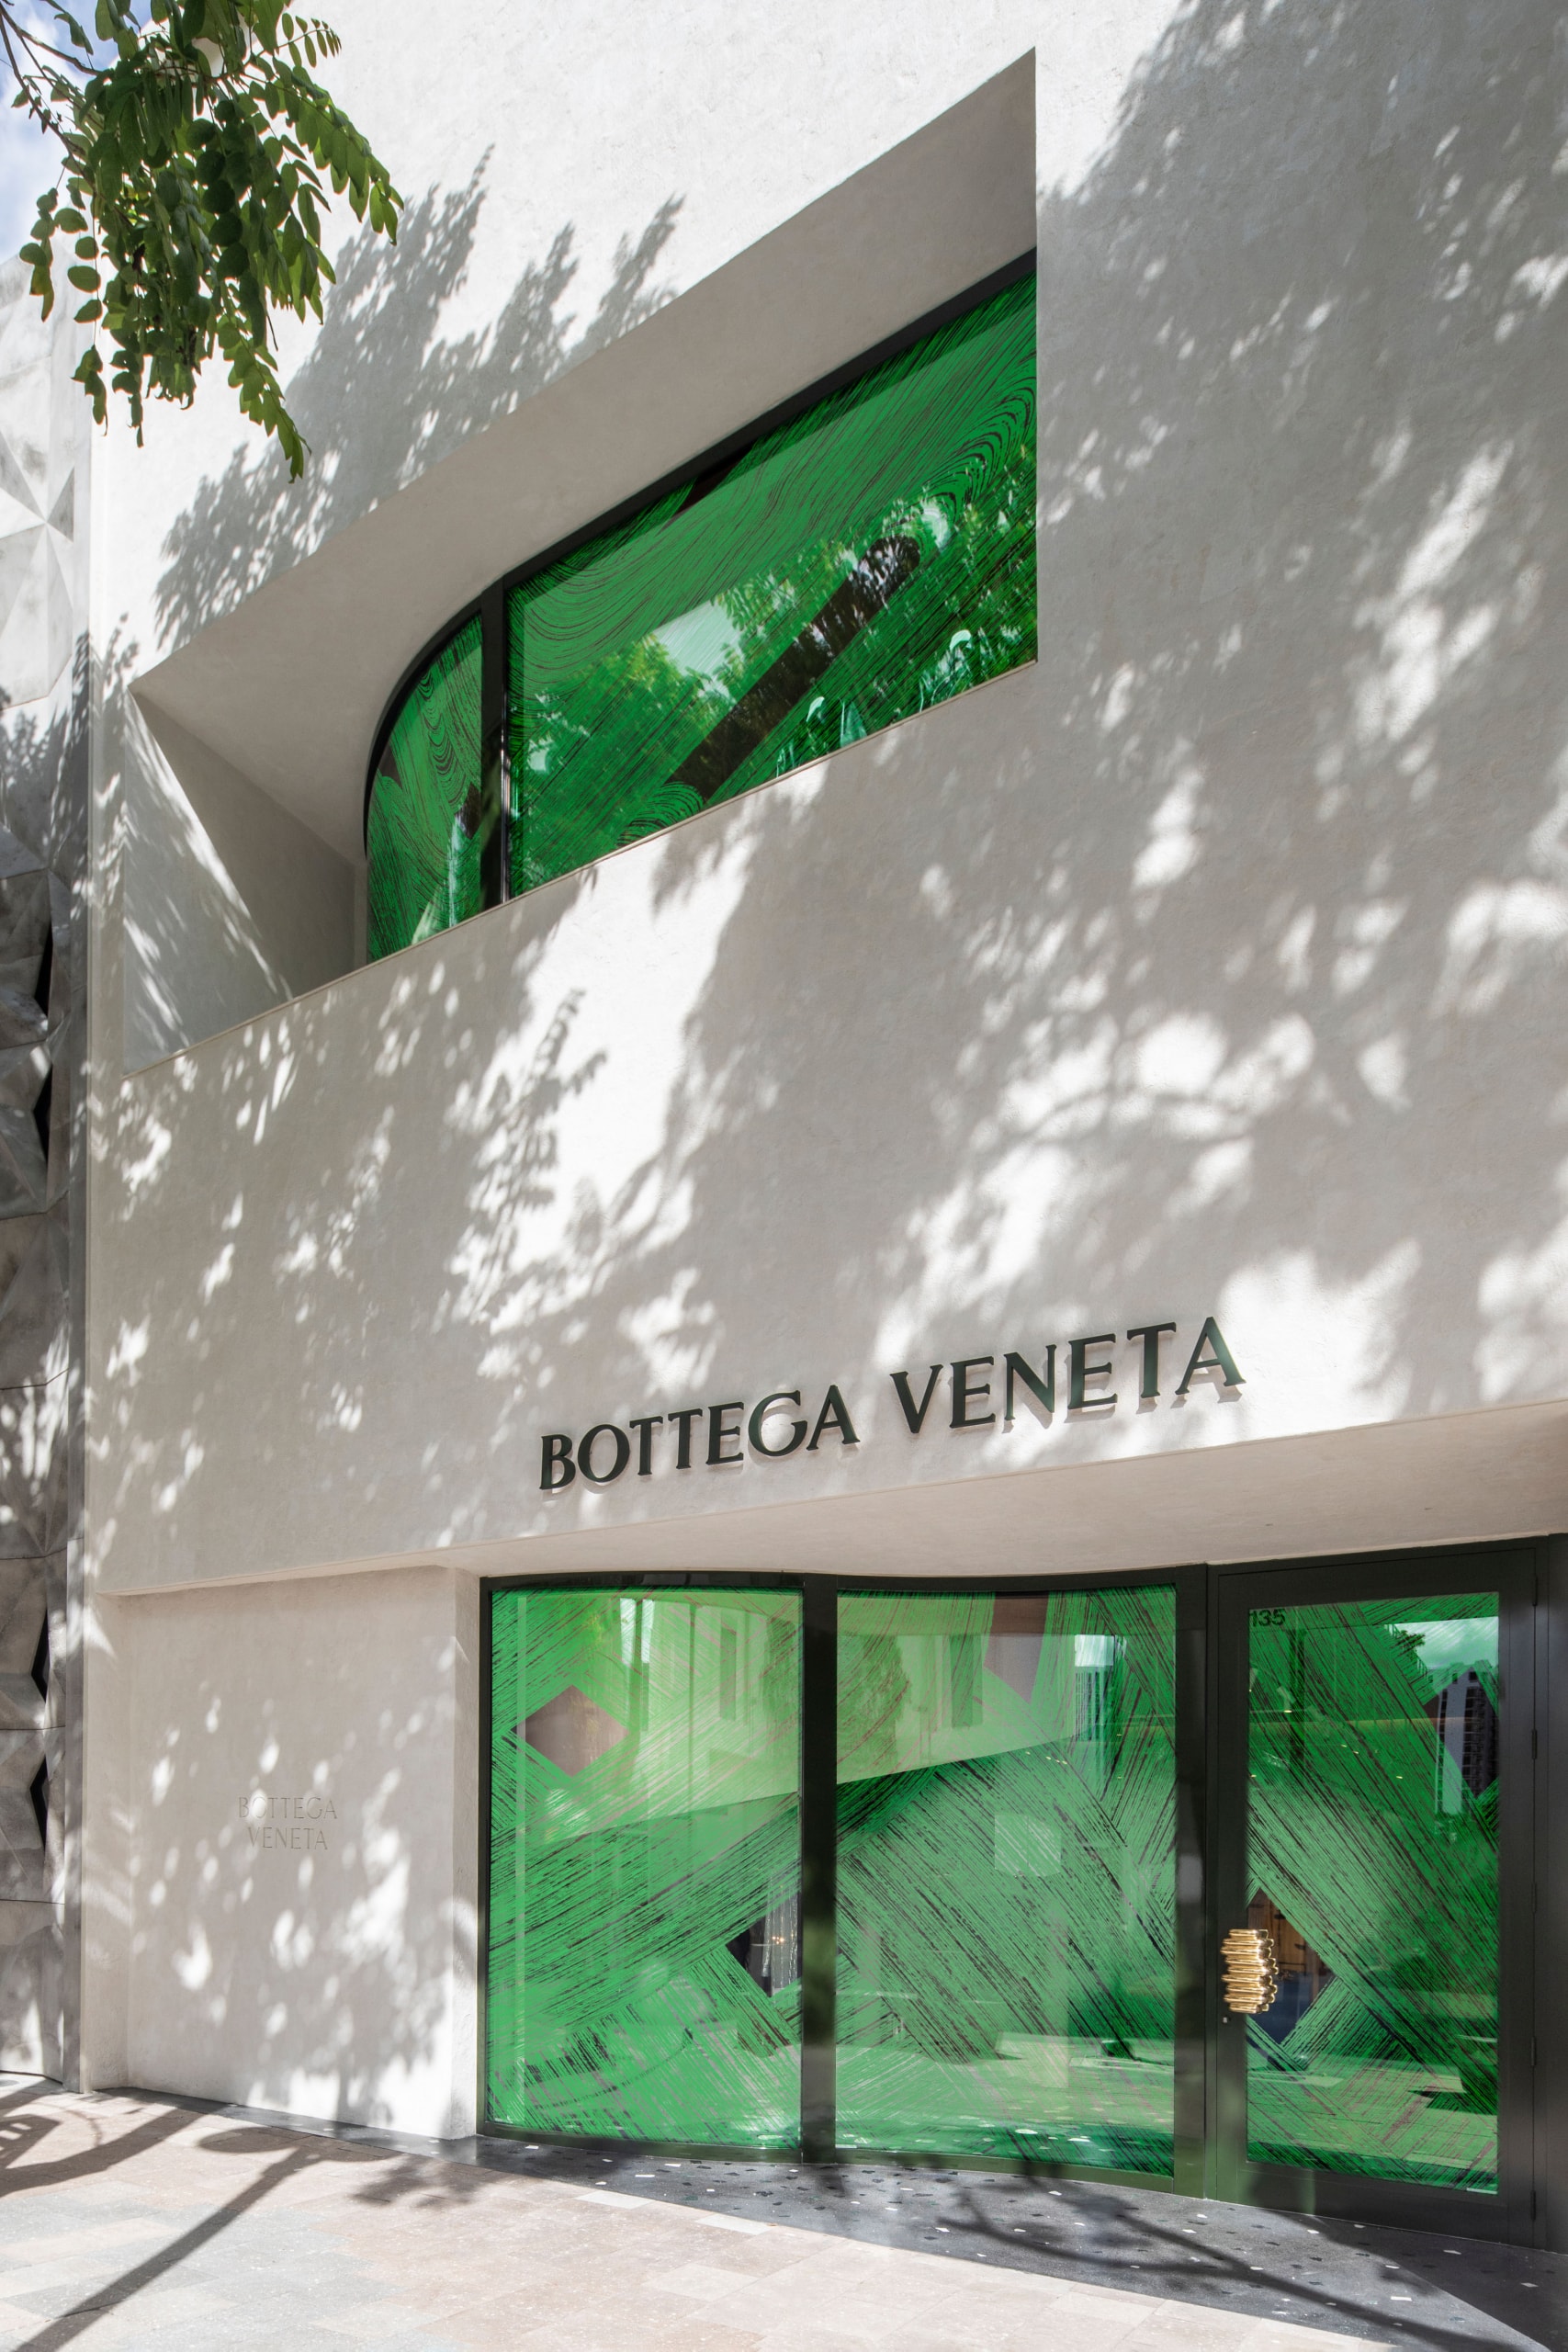 日本設計師萩原卓哉為 Bottega Veneta 全新旗艦店設計櫥窗